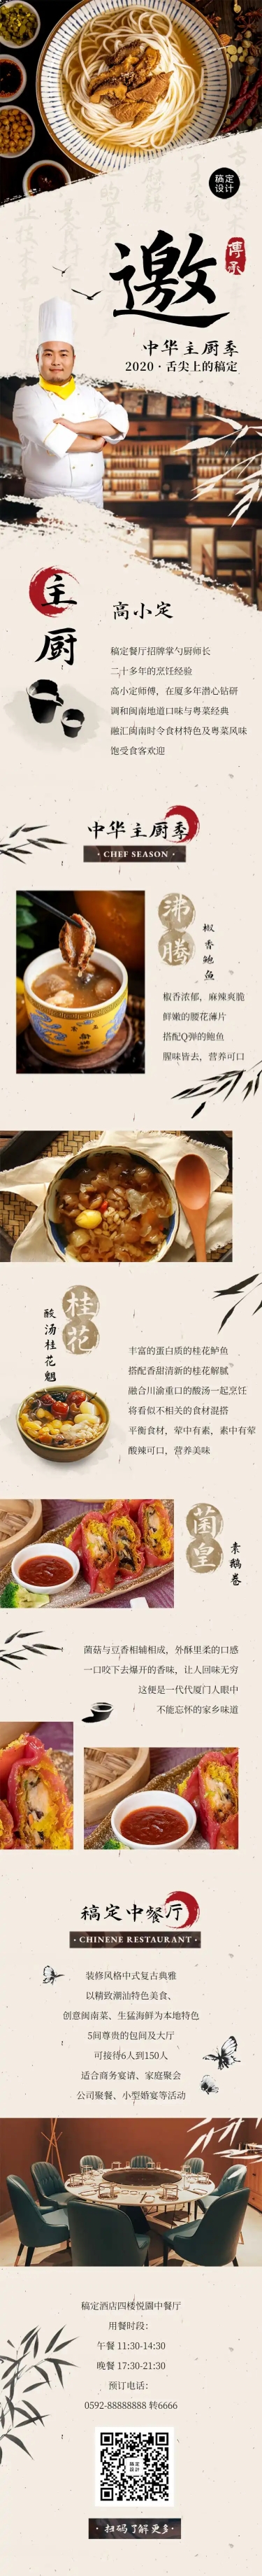 餐饮宣传页品牌介绍中国风文章长图